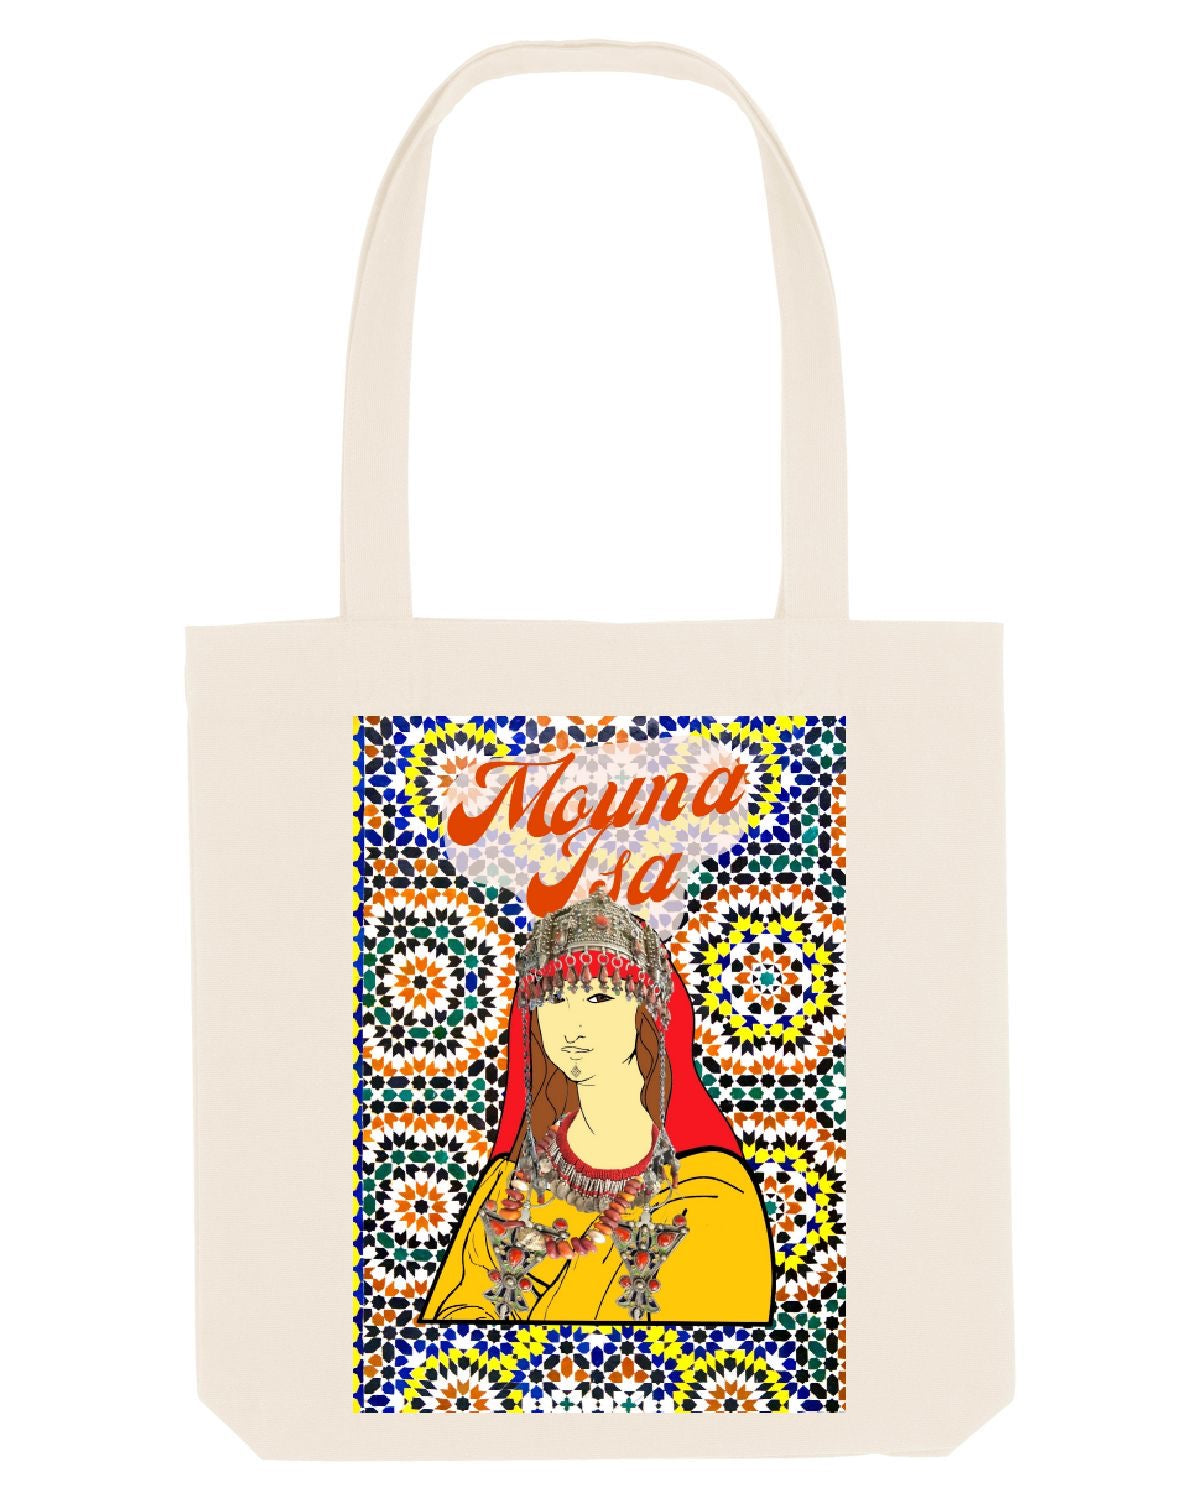 Tote bag "Mouna Isa" - Ghazel Boutique